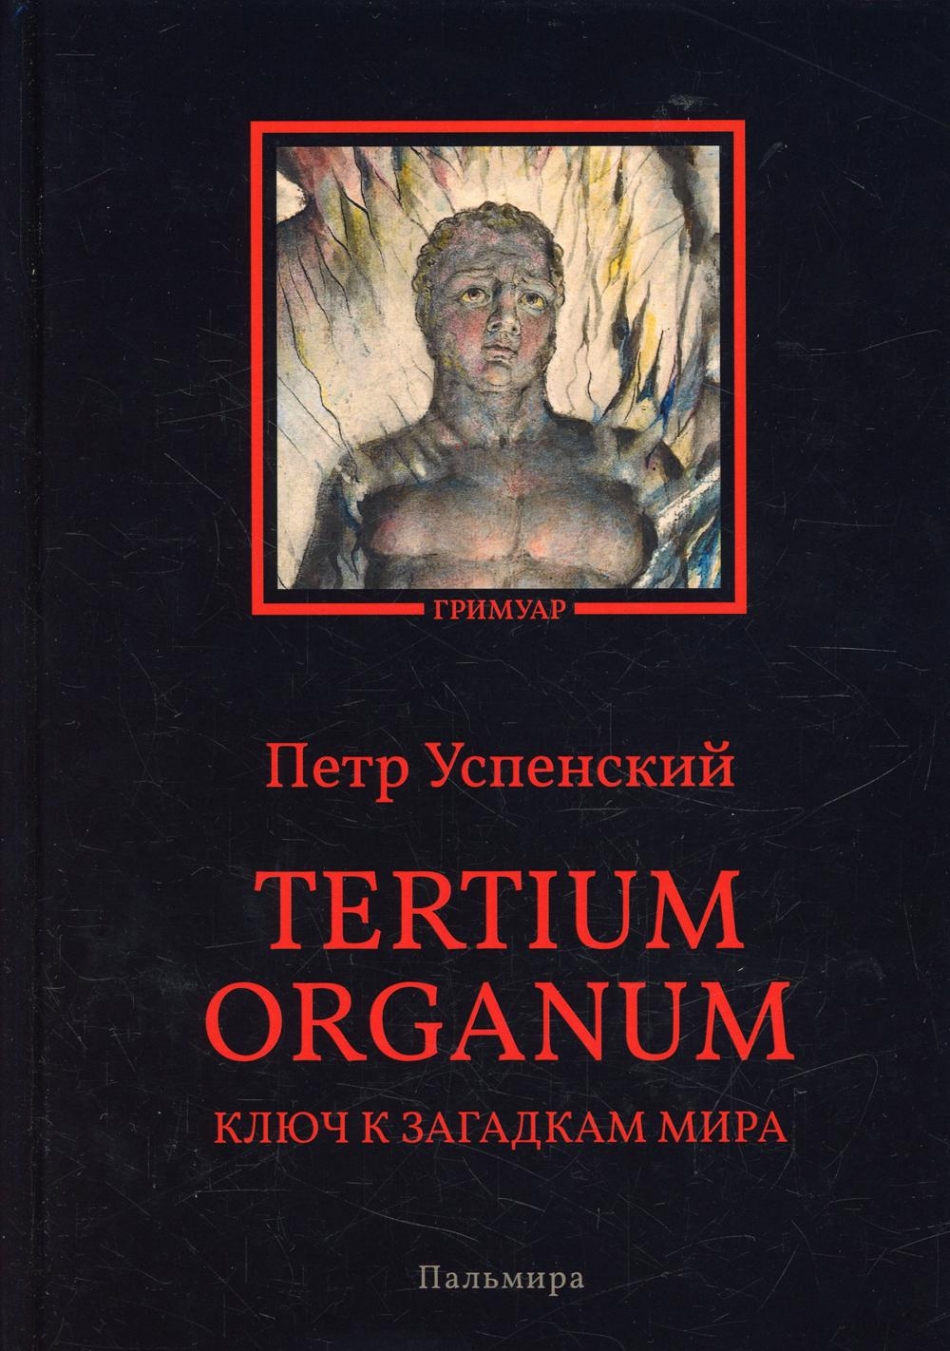  . Tertium organum.     